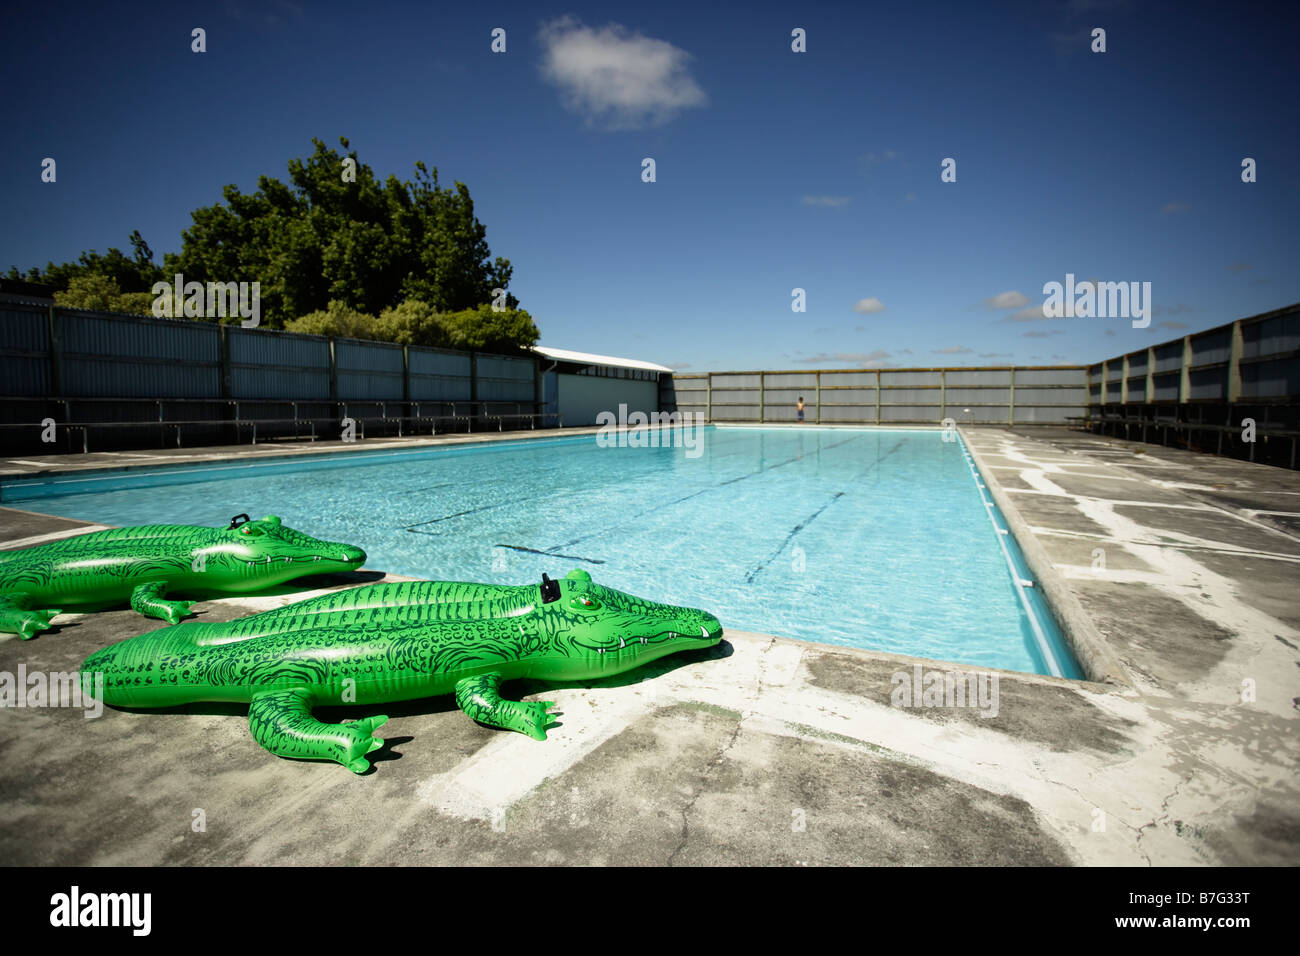 Crocodile gonflable à la piscine Banque D'Images